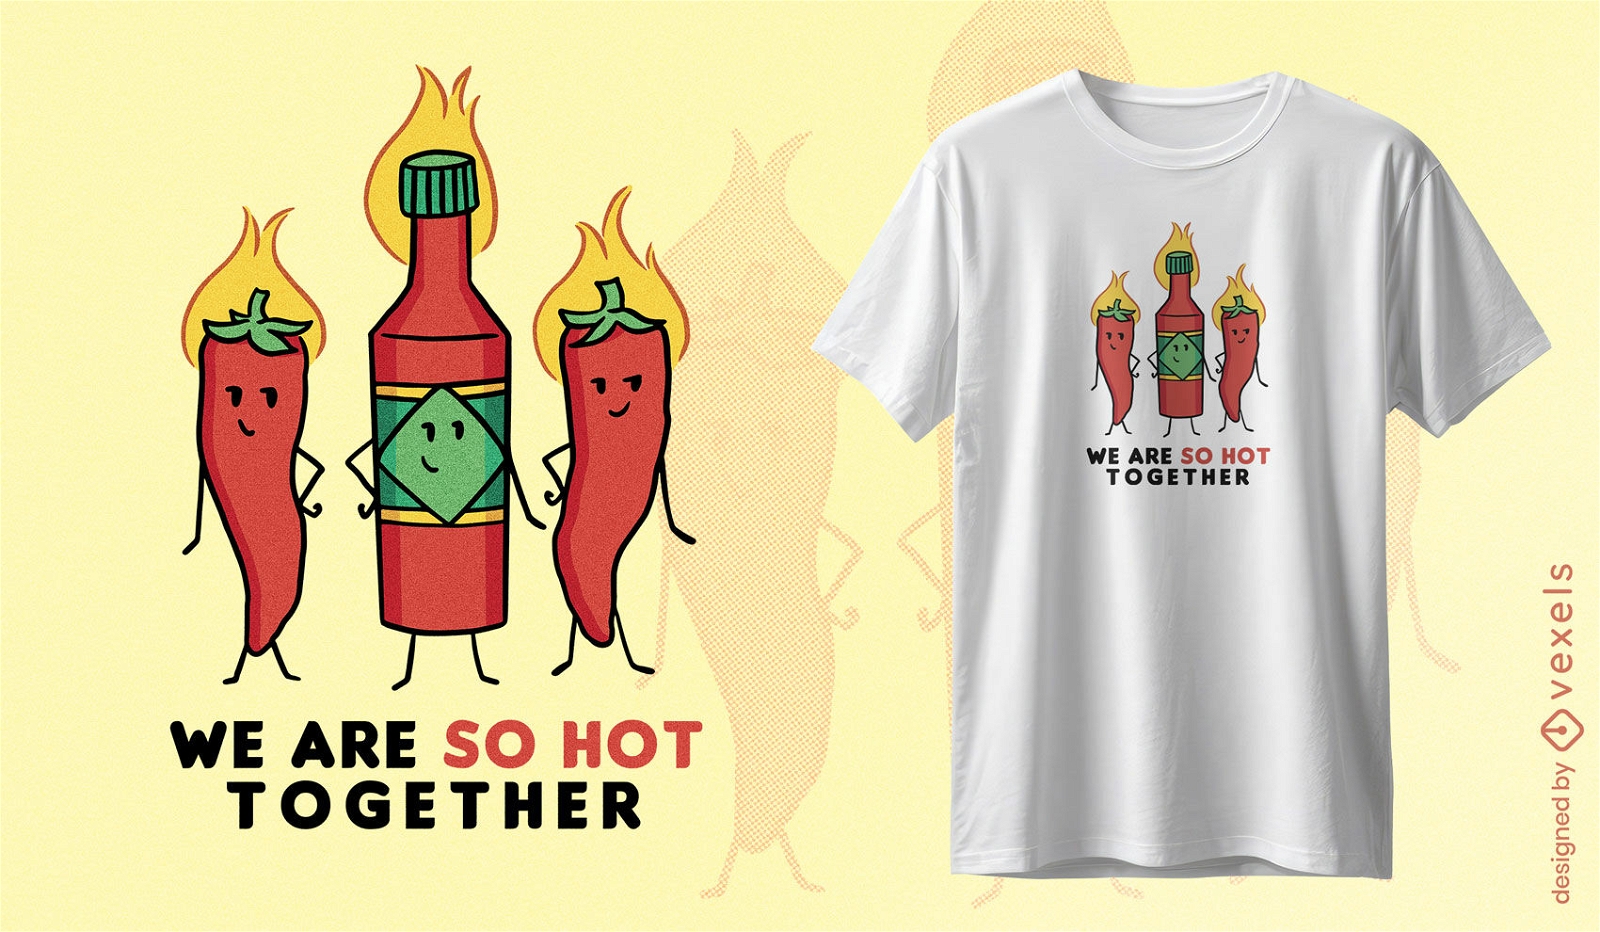 Dise?o de camiseta de comida picante y caliente.